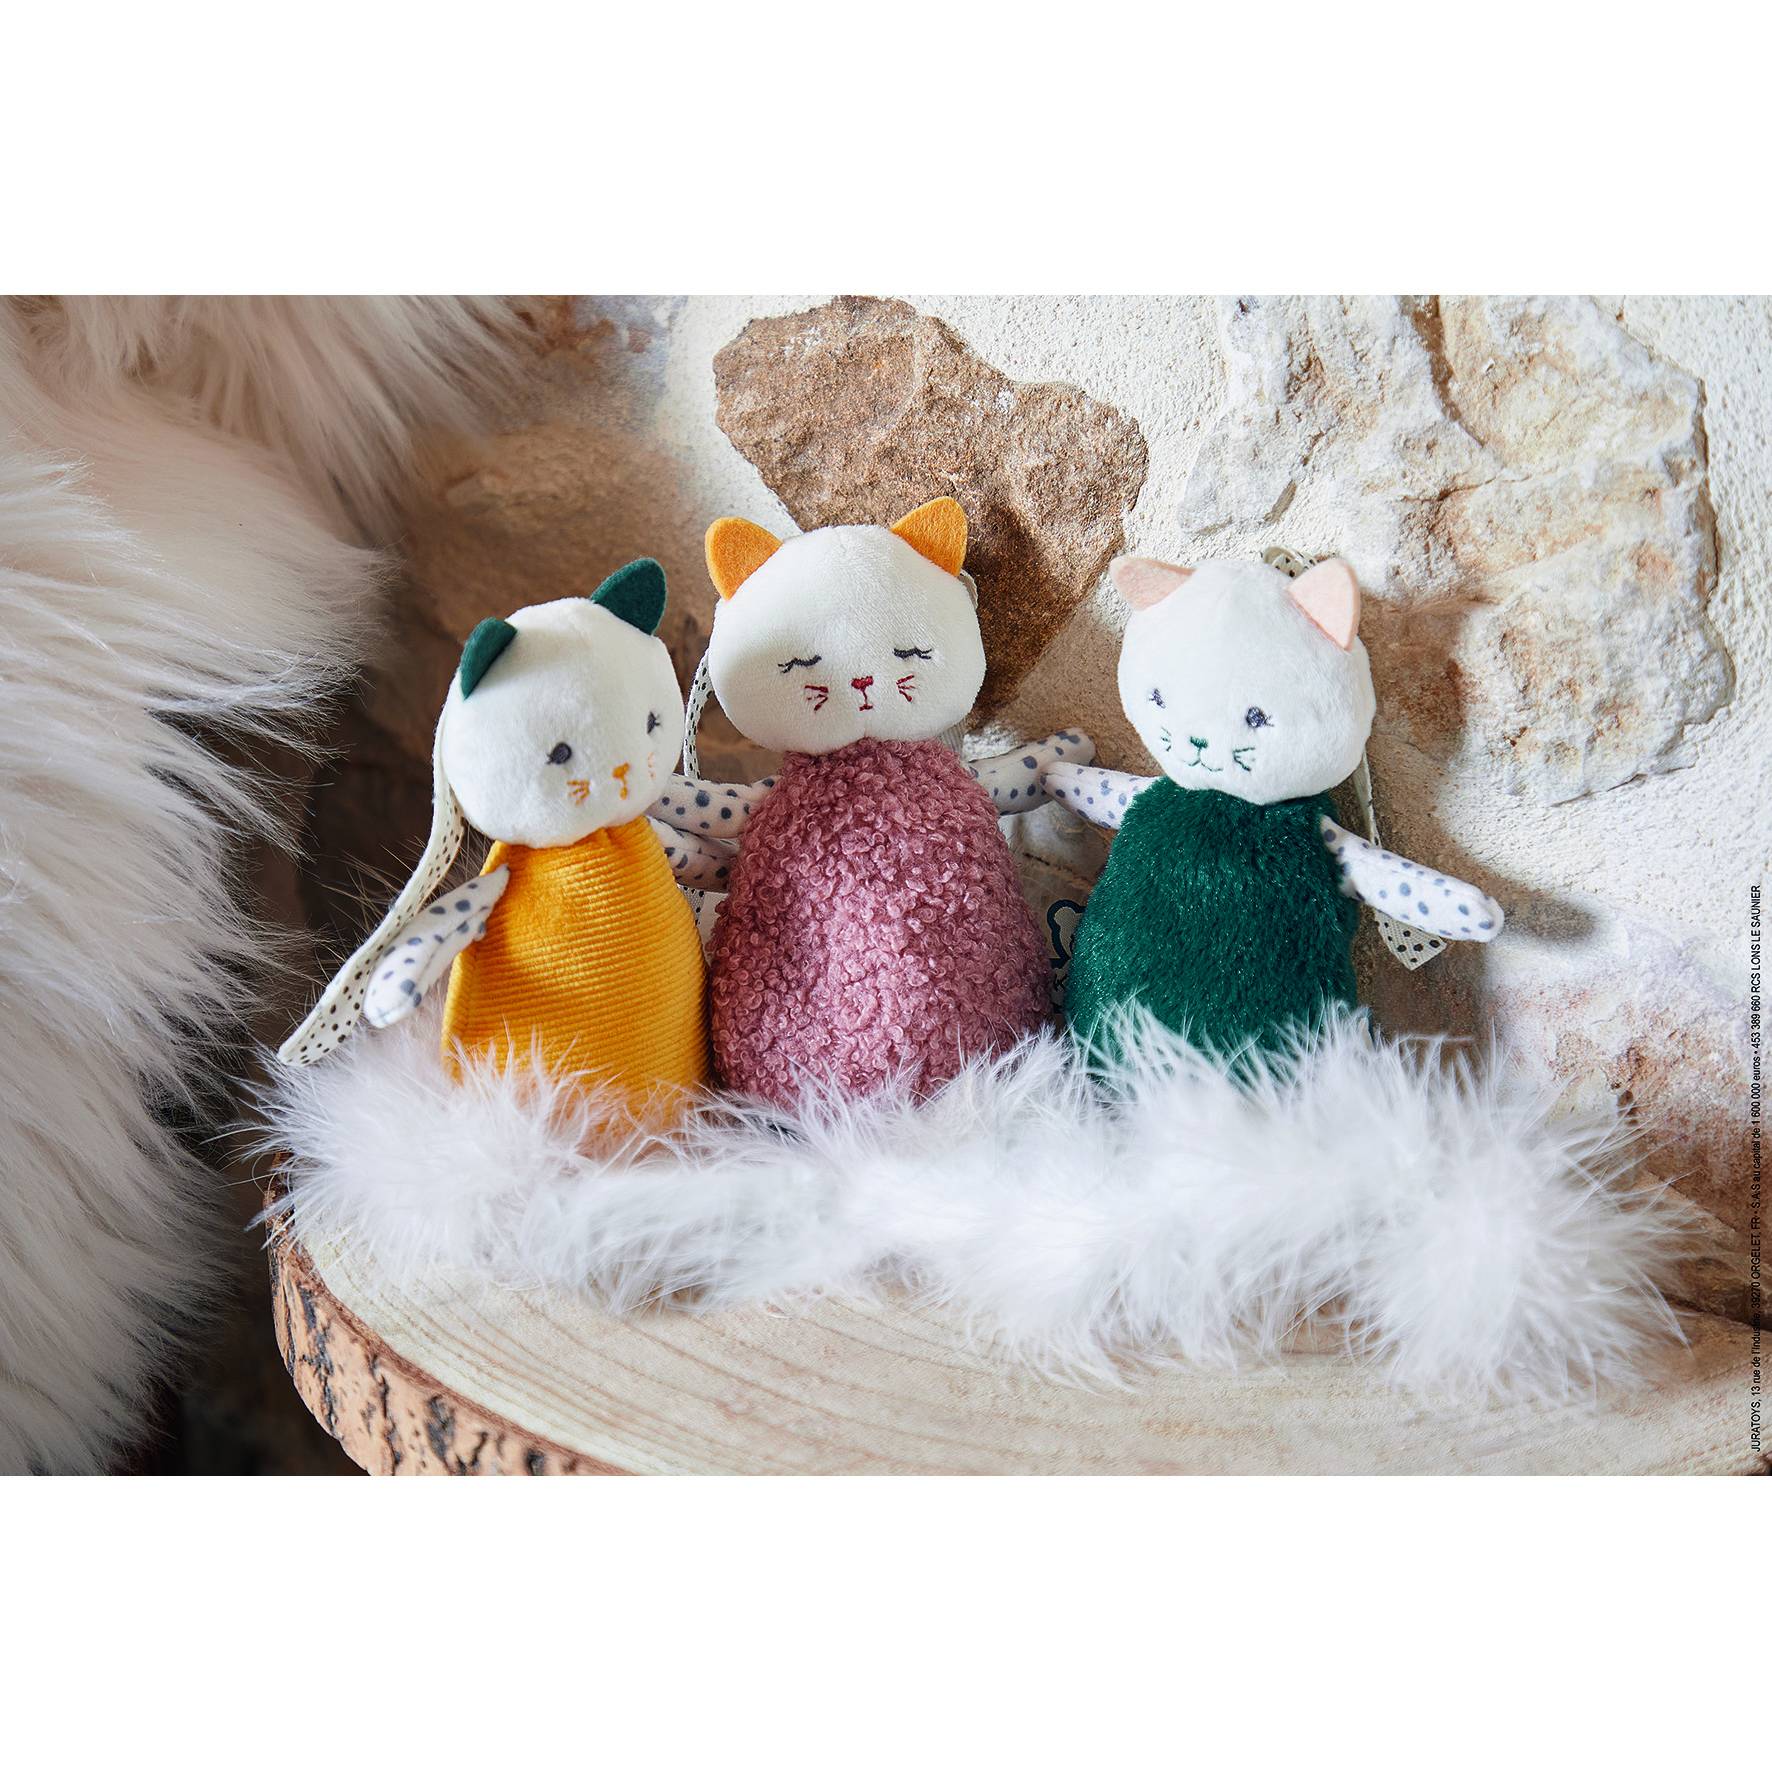 trois petits chats doudous